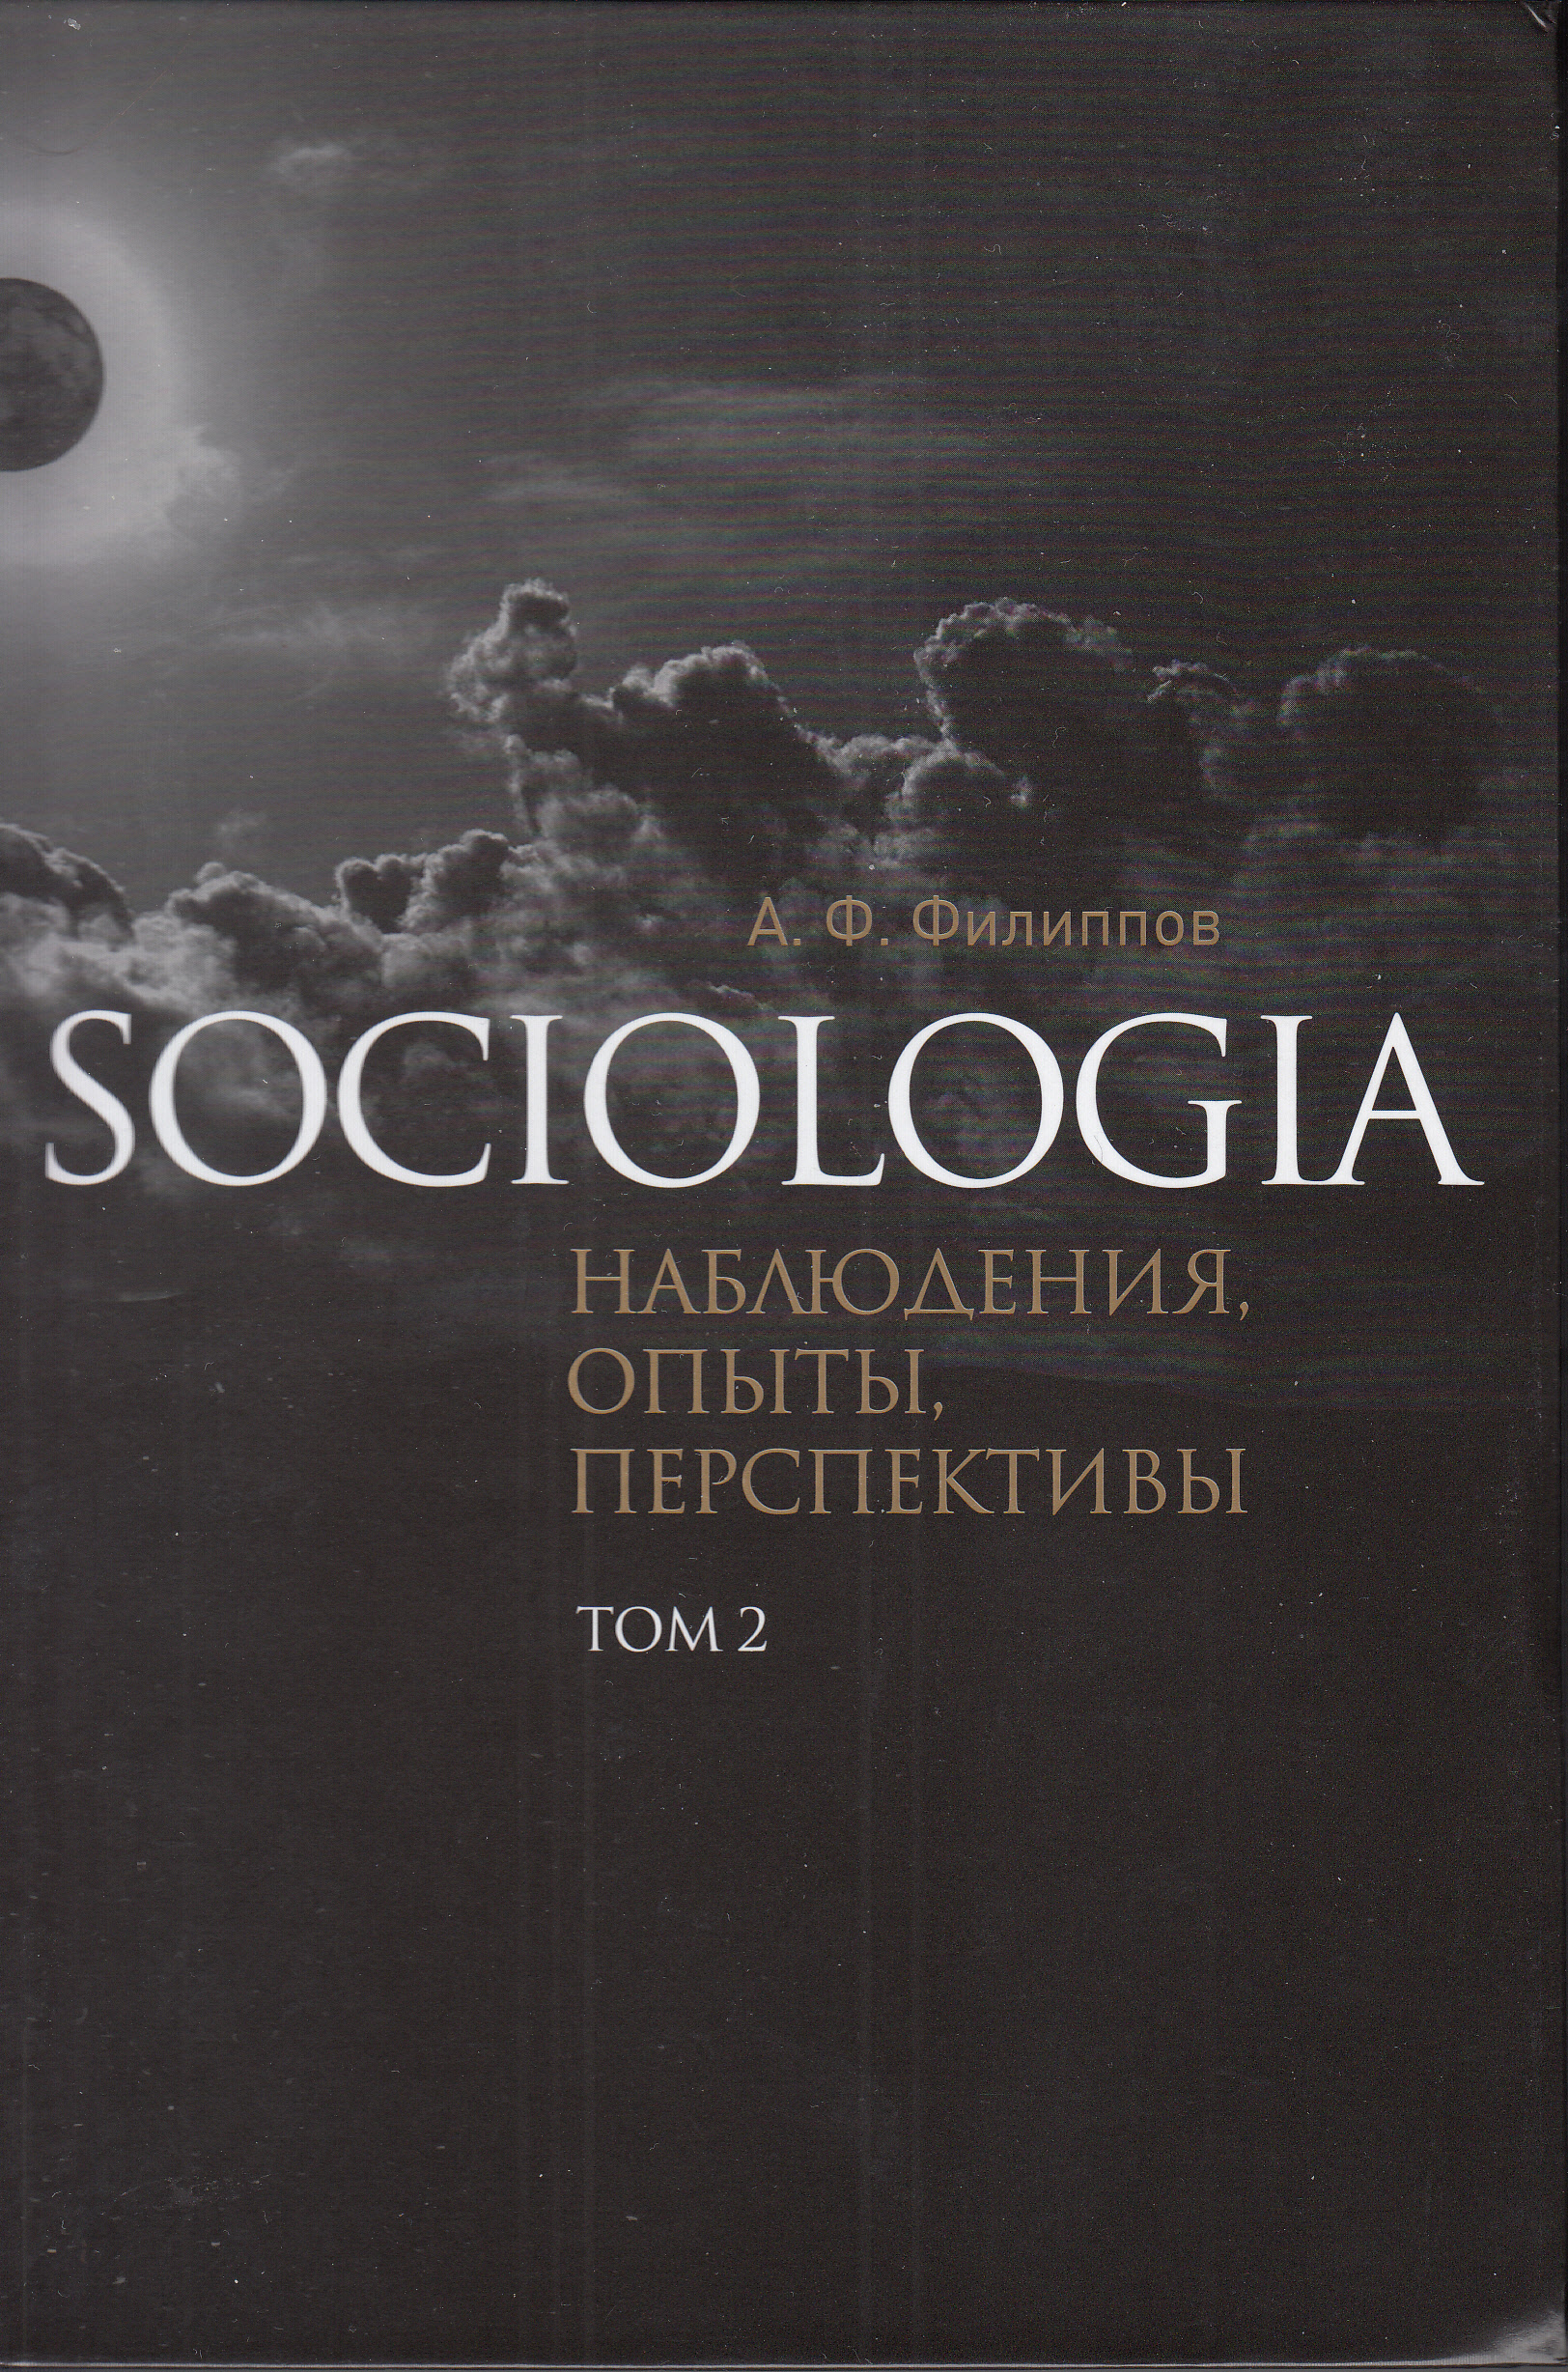 Sociologia. Наблюдения, опыты, перспективы. Т. 2.